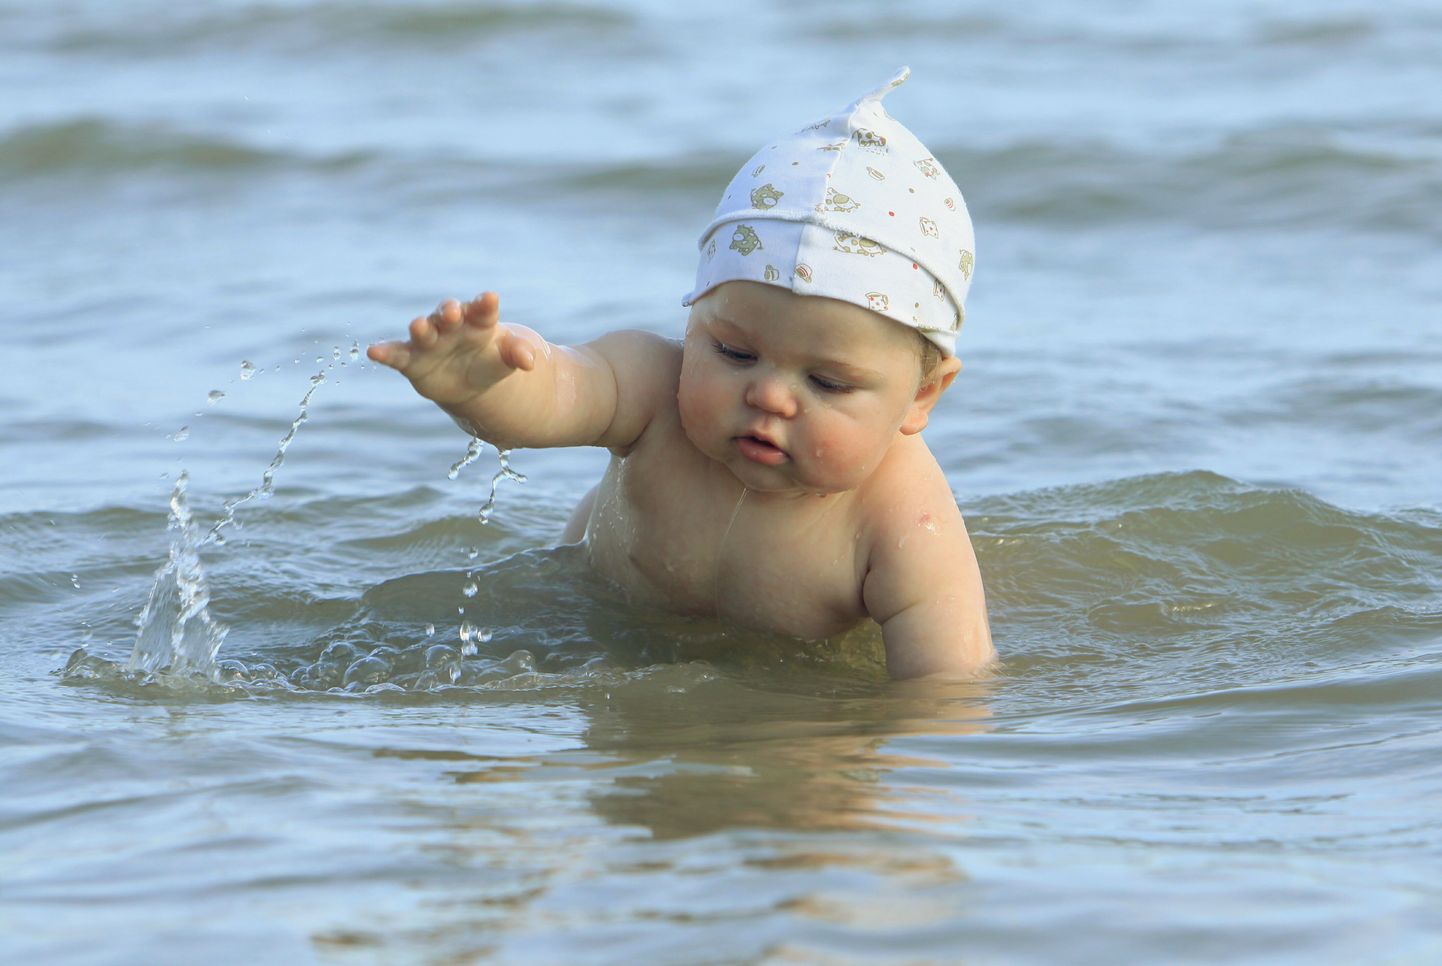 Väikseid lapsi ei tohi rannas hetkekski tähelepanuta jätta. Pilt on illustratiivne.